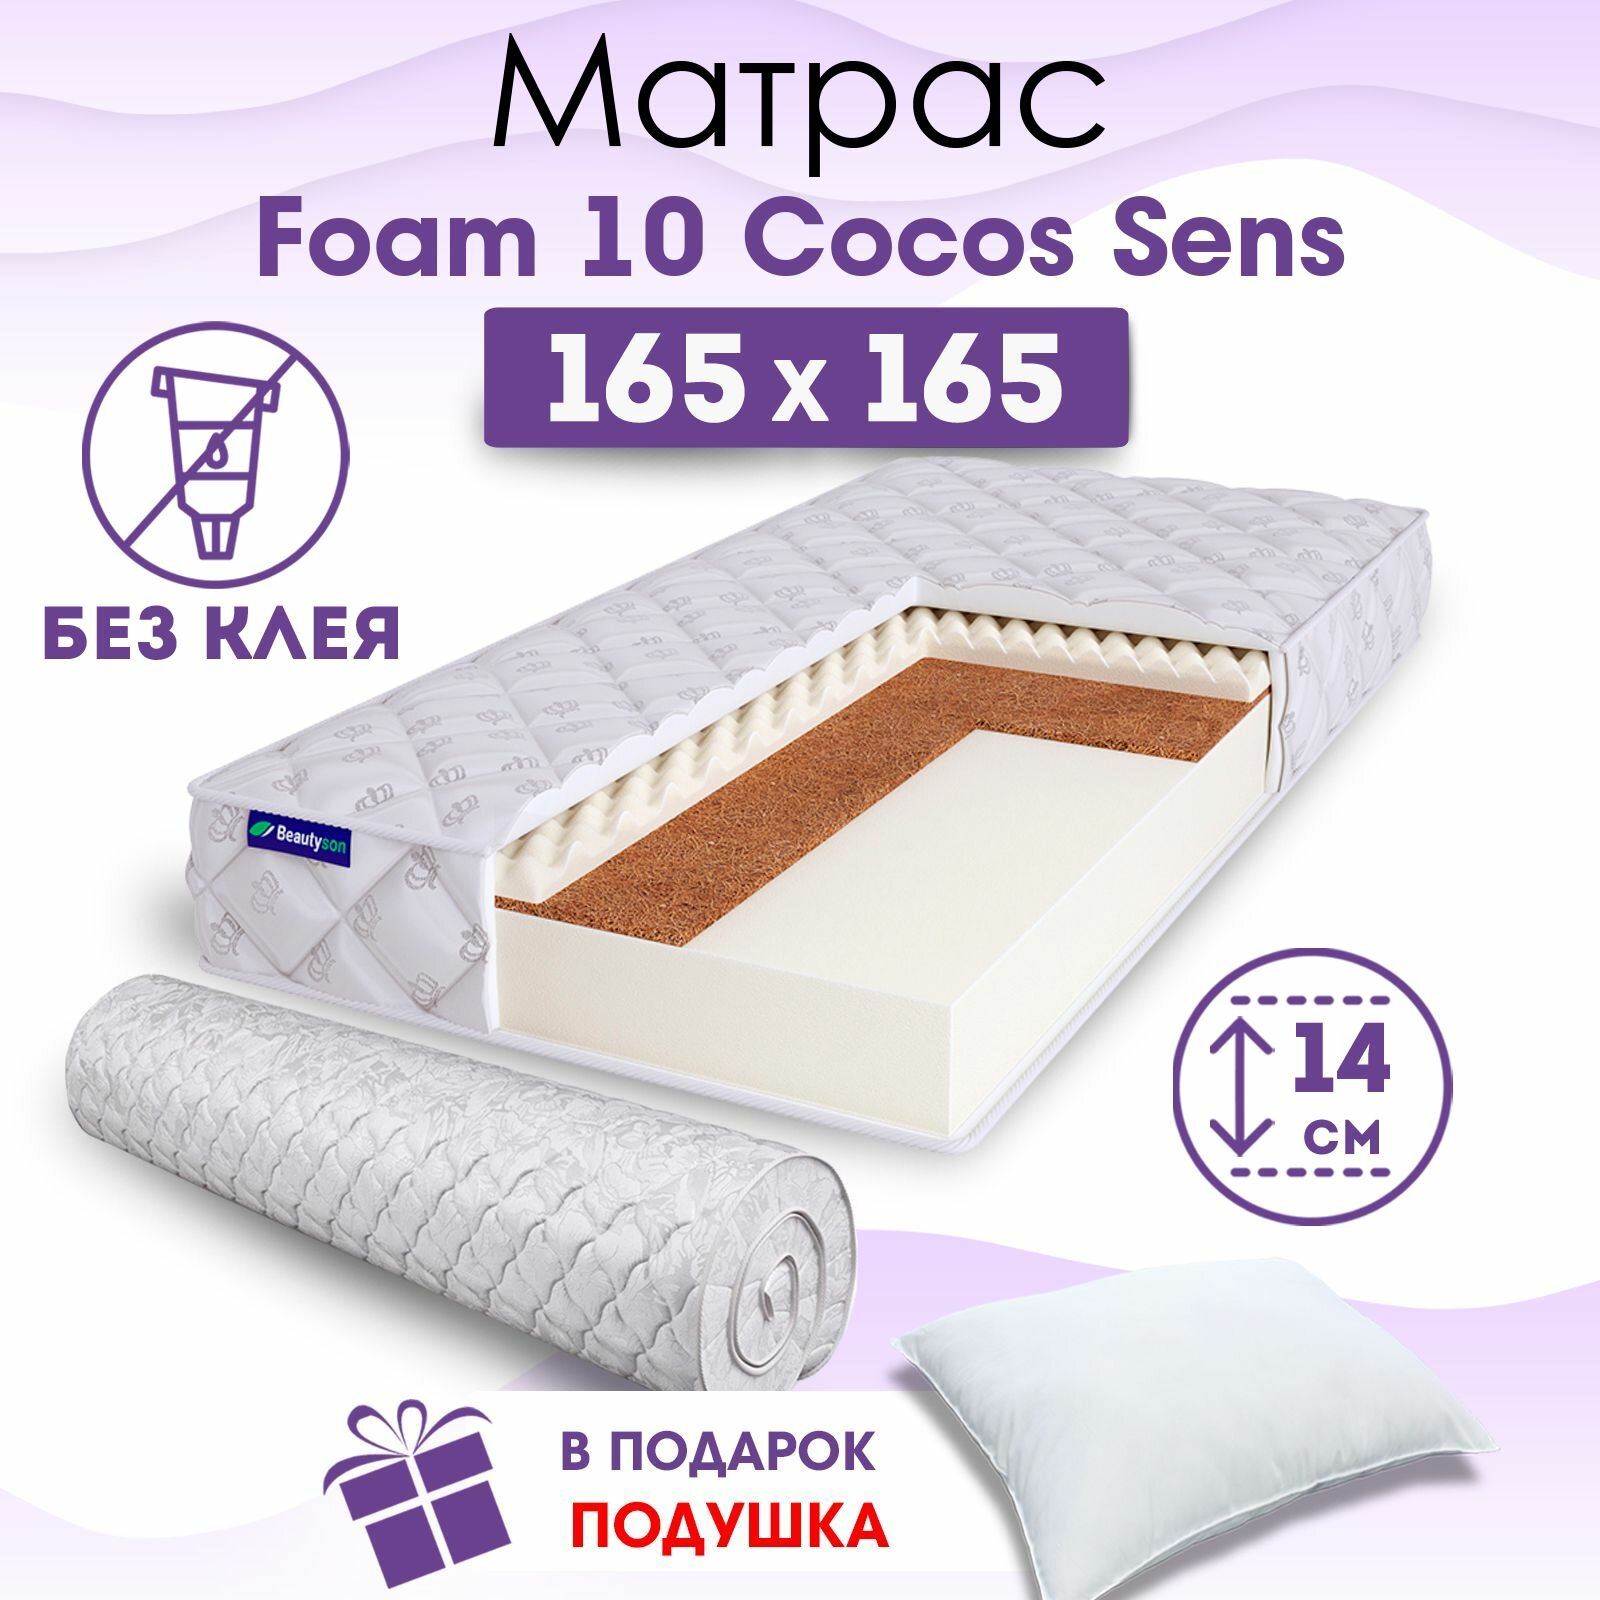 Ортопедический матрас Beautyson Foam 10 Cocos Sens без клея, 165х165, 14 см, беспружинный, двухспальный, на кровать, для дивана, умеренно мягкий